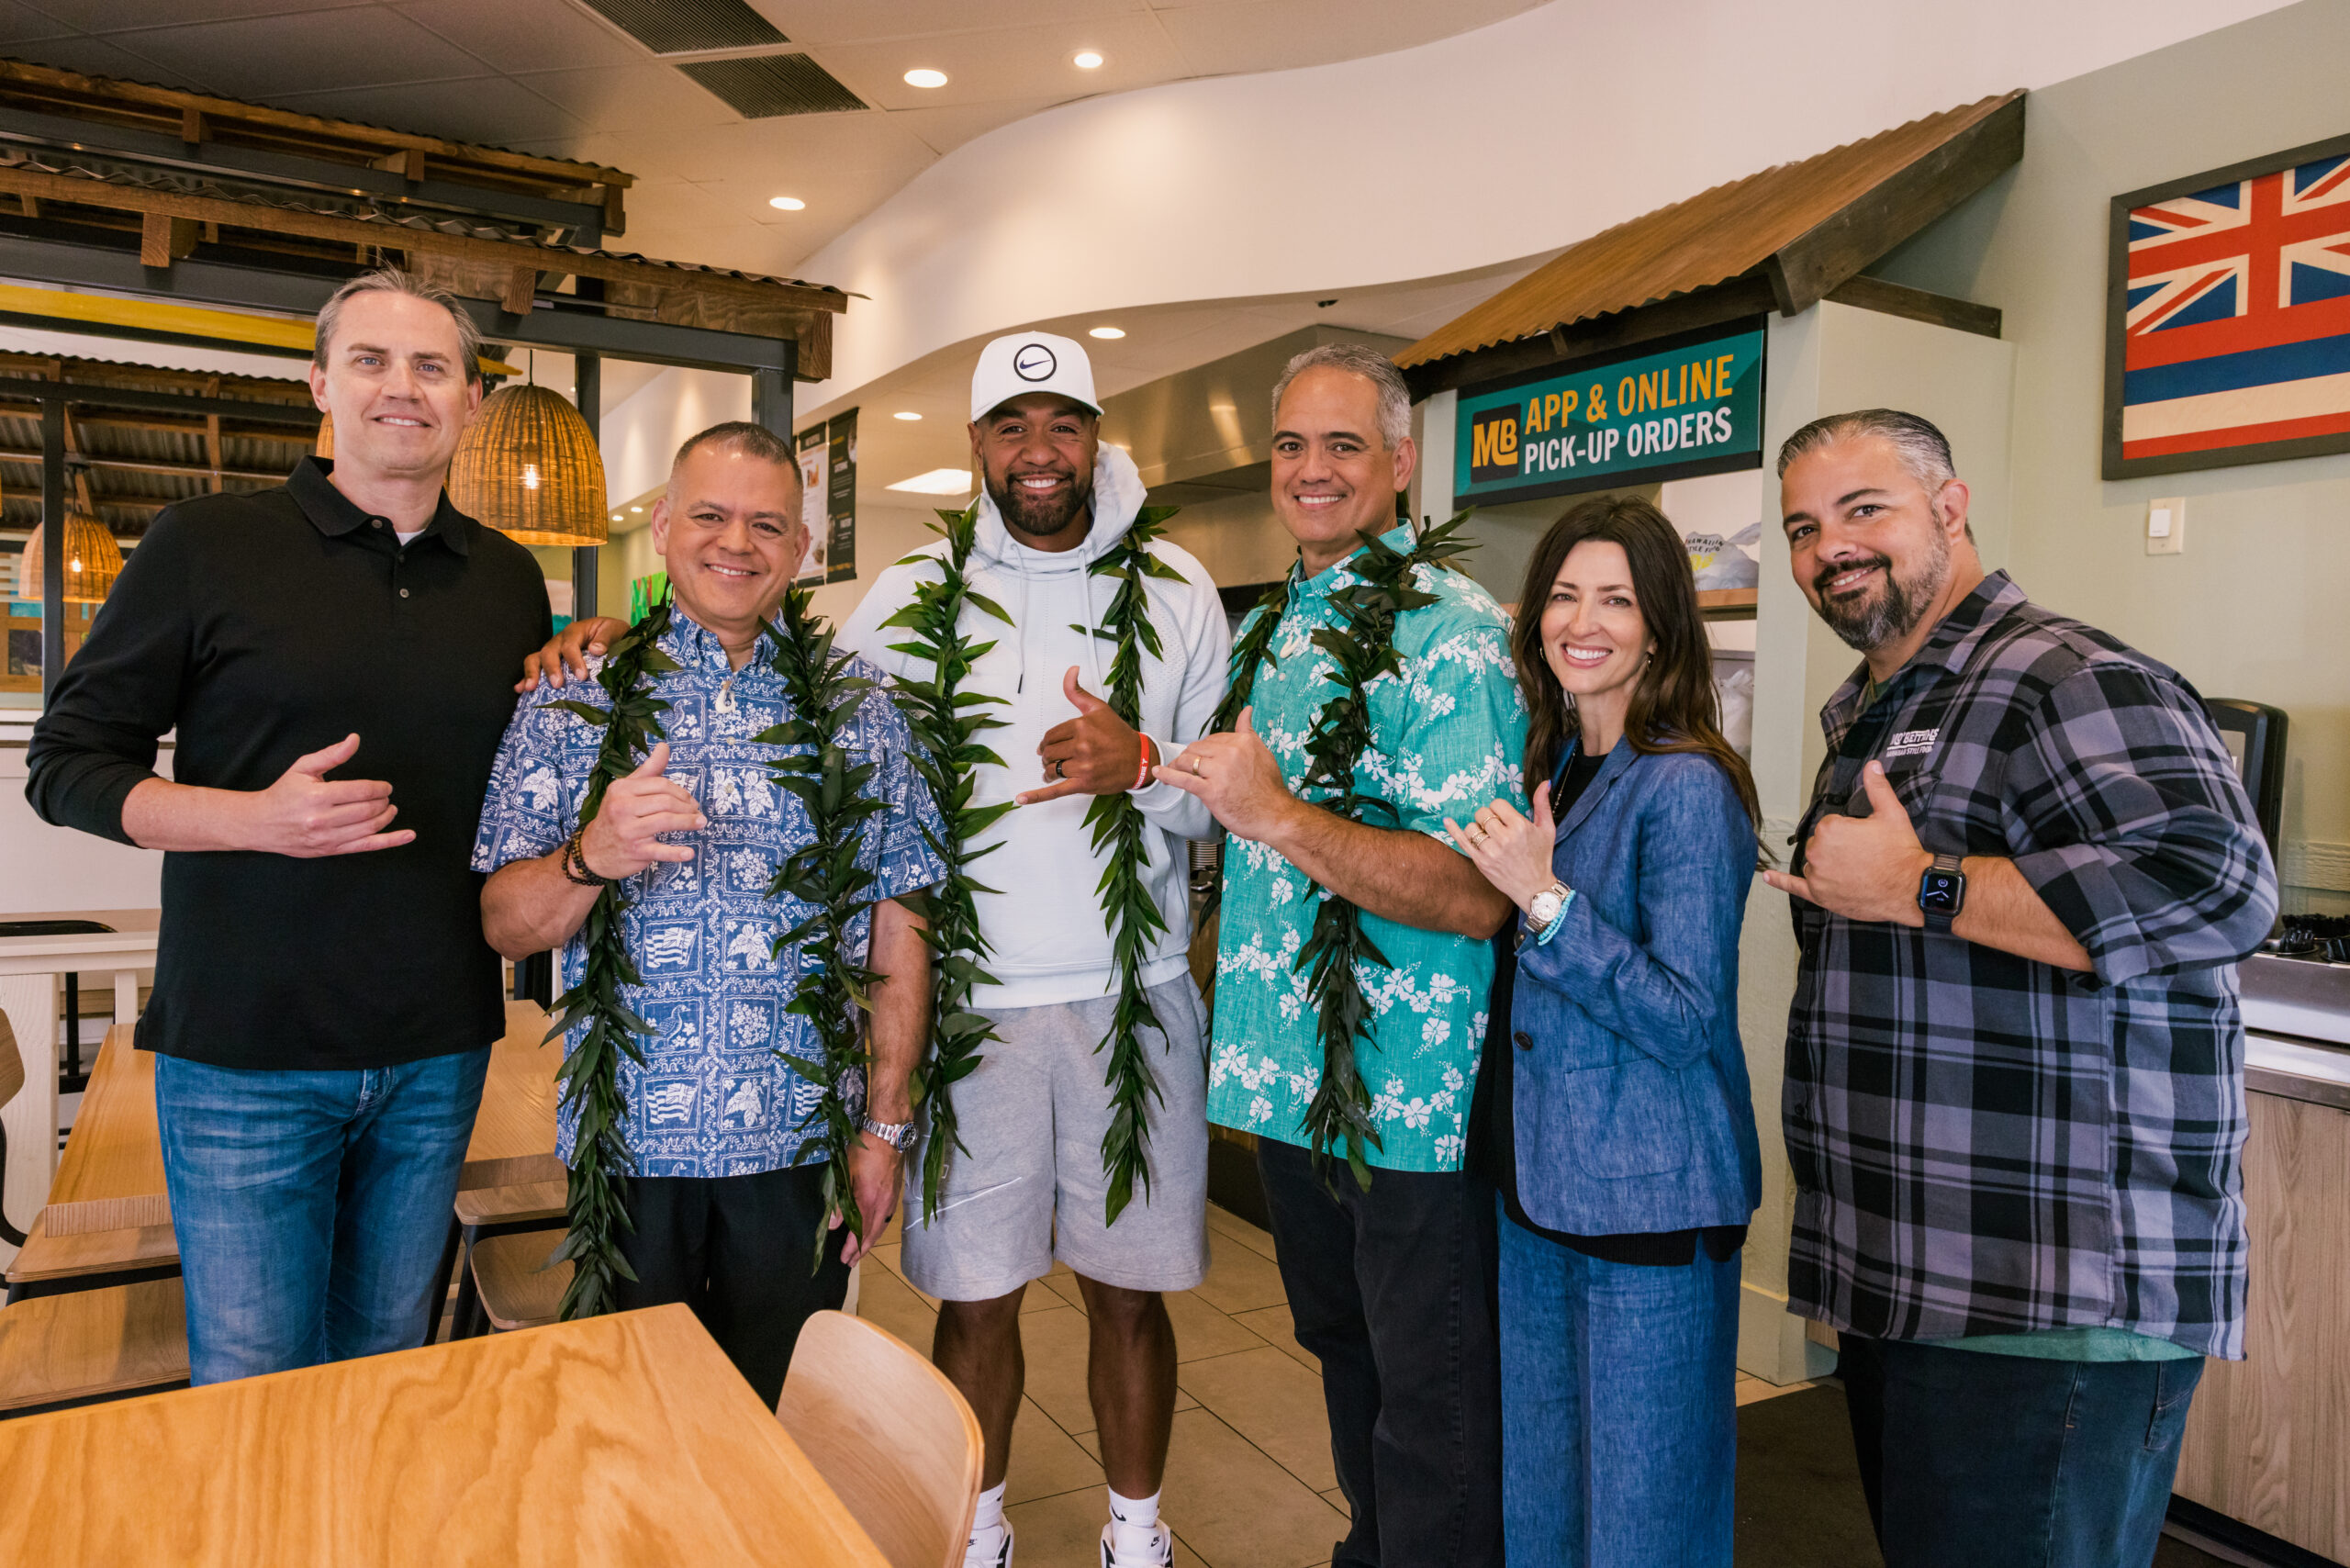 And gave Utahns an authentic taste of “Aloha!"